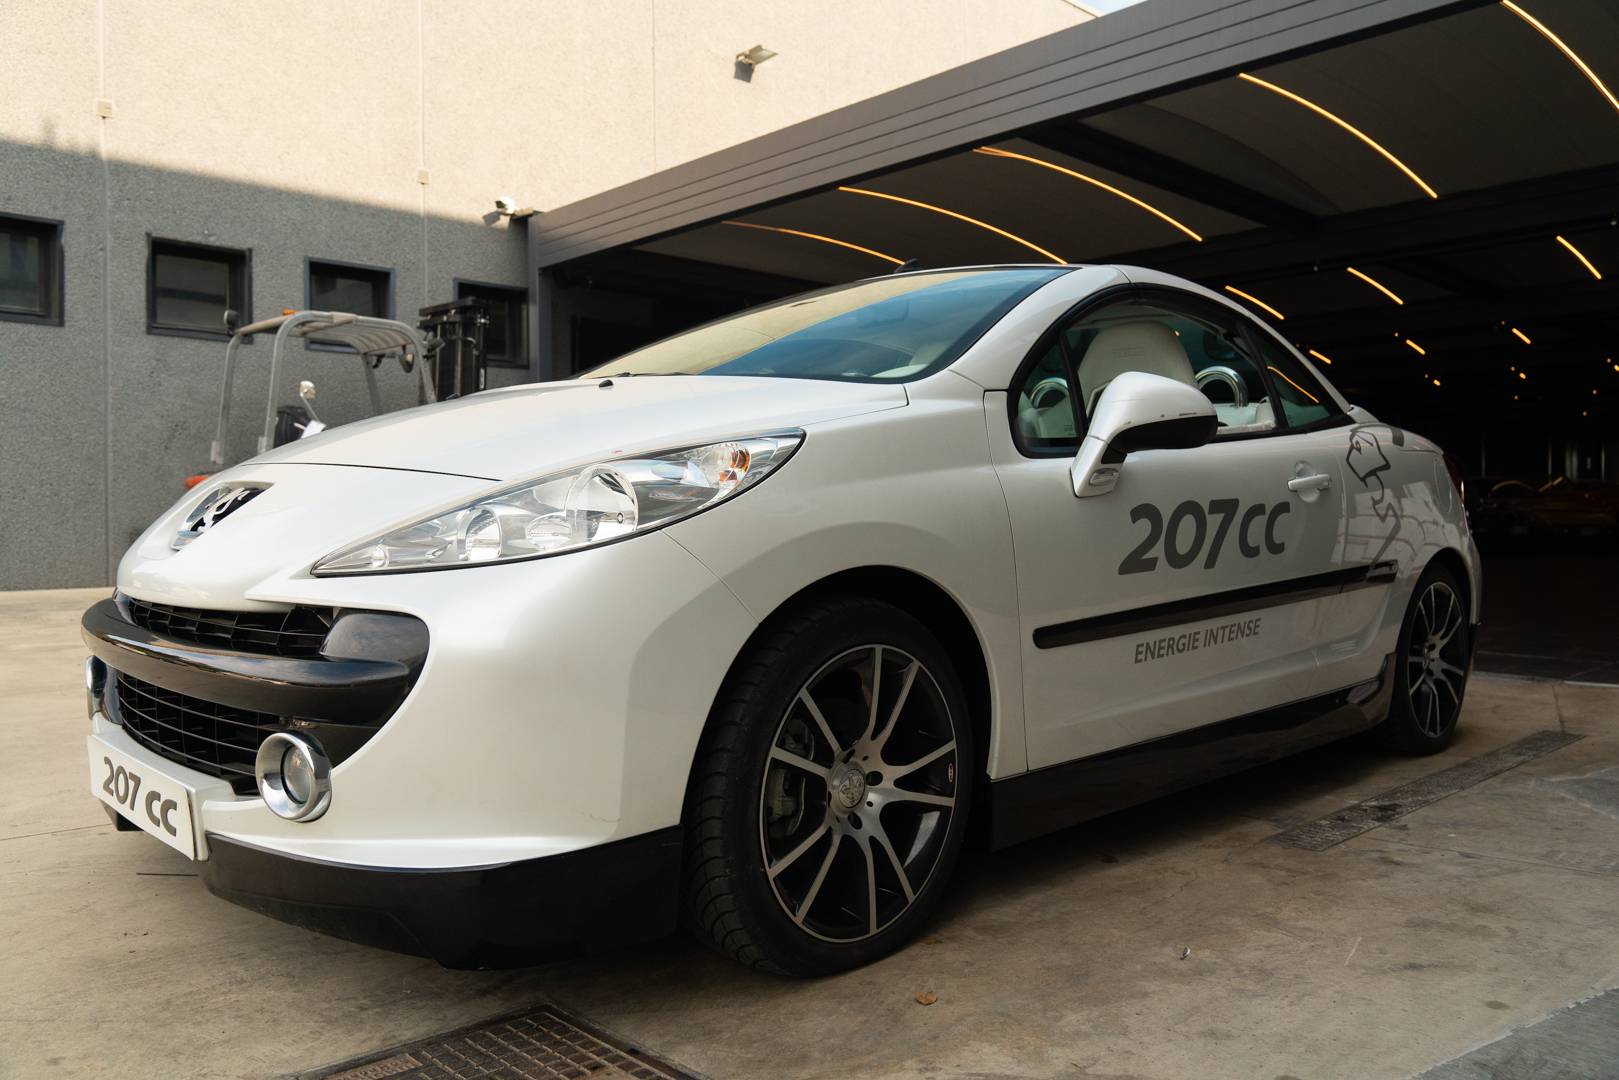 Zu Verkaufen: Peugeot 207 CC 1.6 VTi (2007) angeboten für 26.600 €